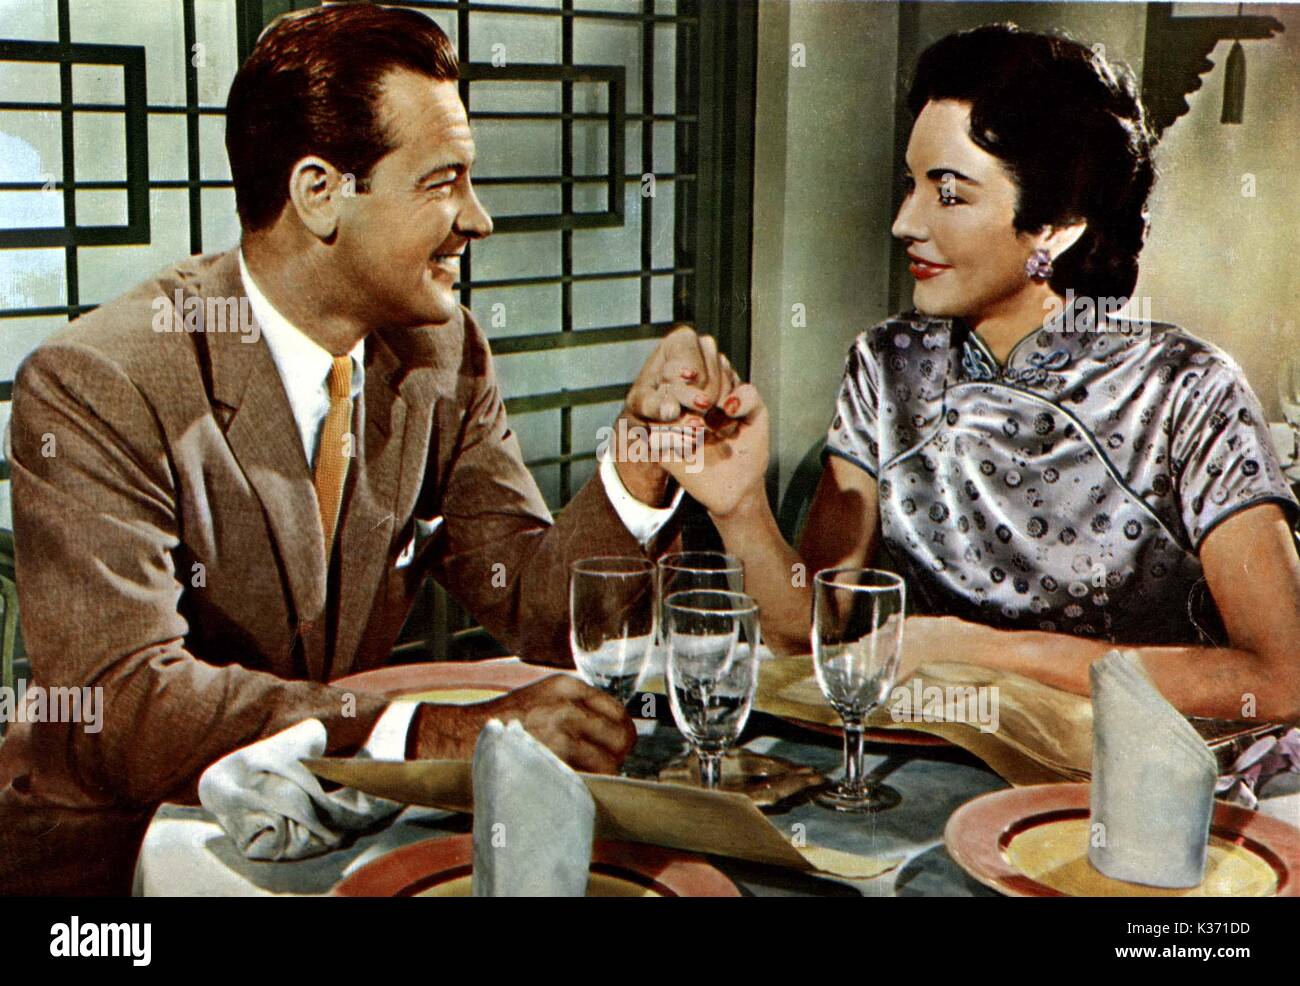 Liebe ist eine Viele-splendoured Sache, William Holden, Jennifer Jones Datum: 1955 Stockfoto